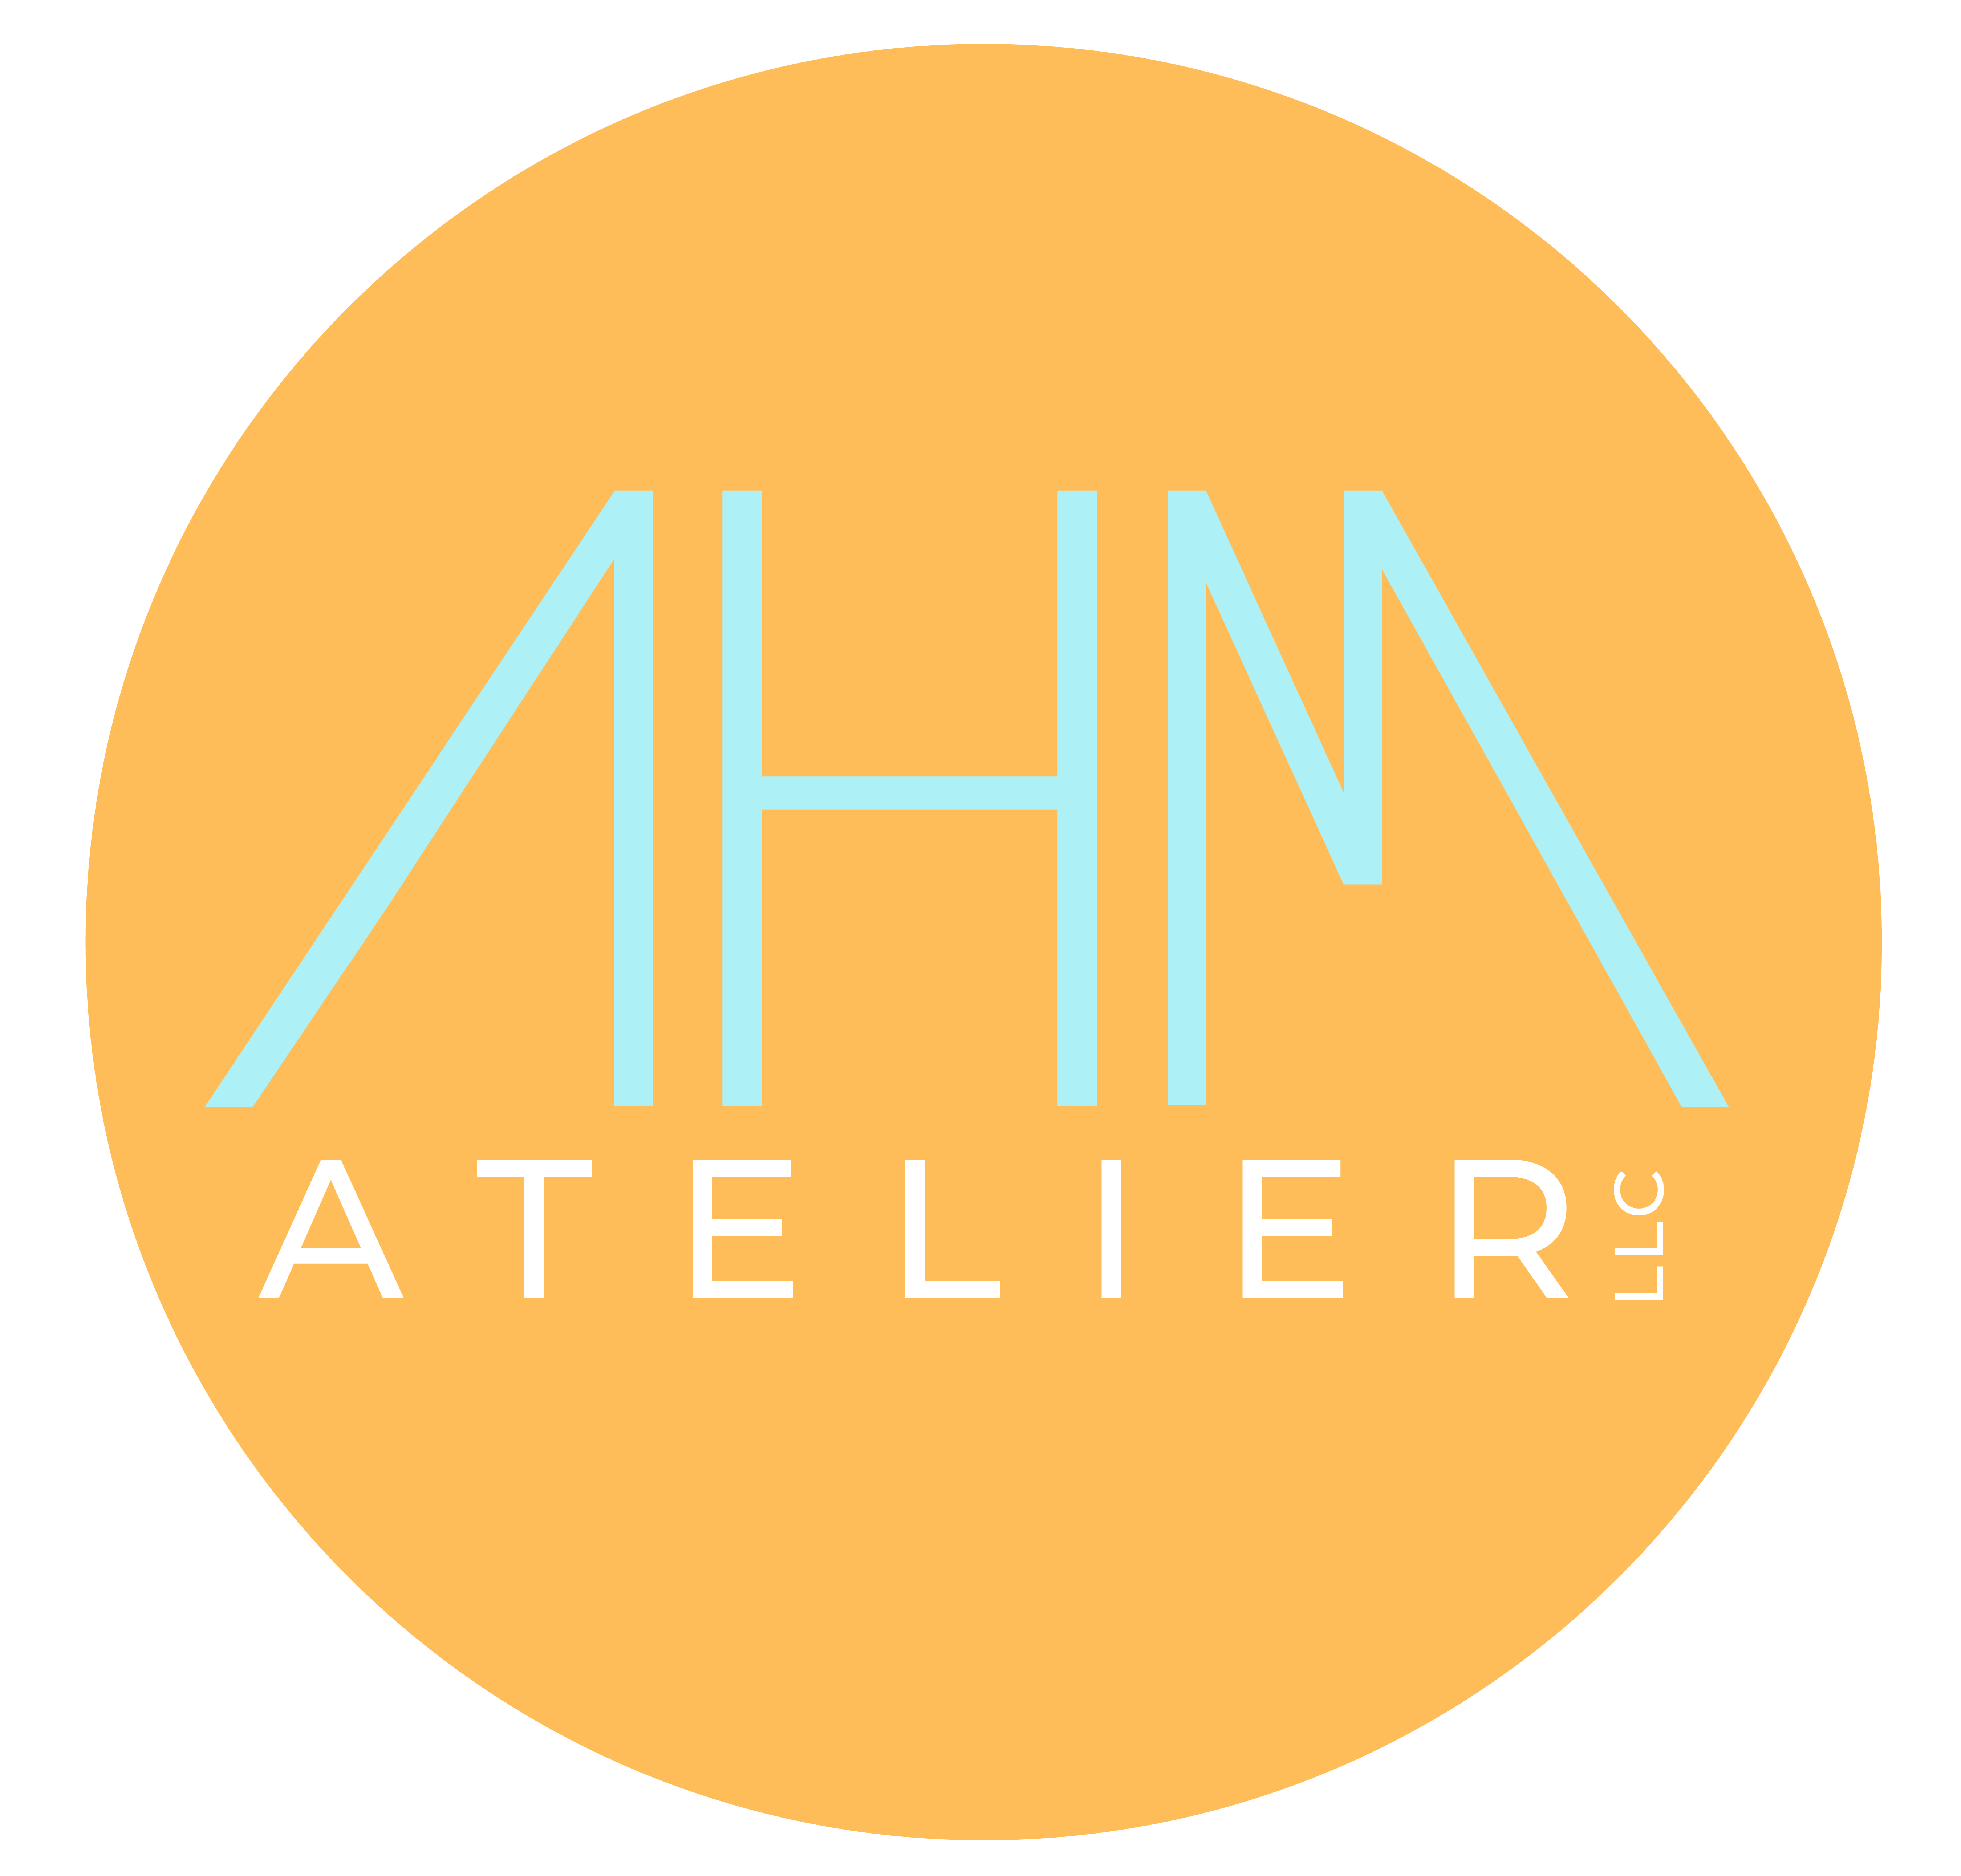 A healthy model atelier logo